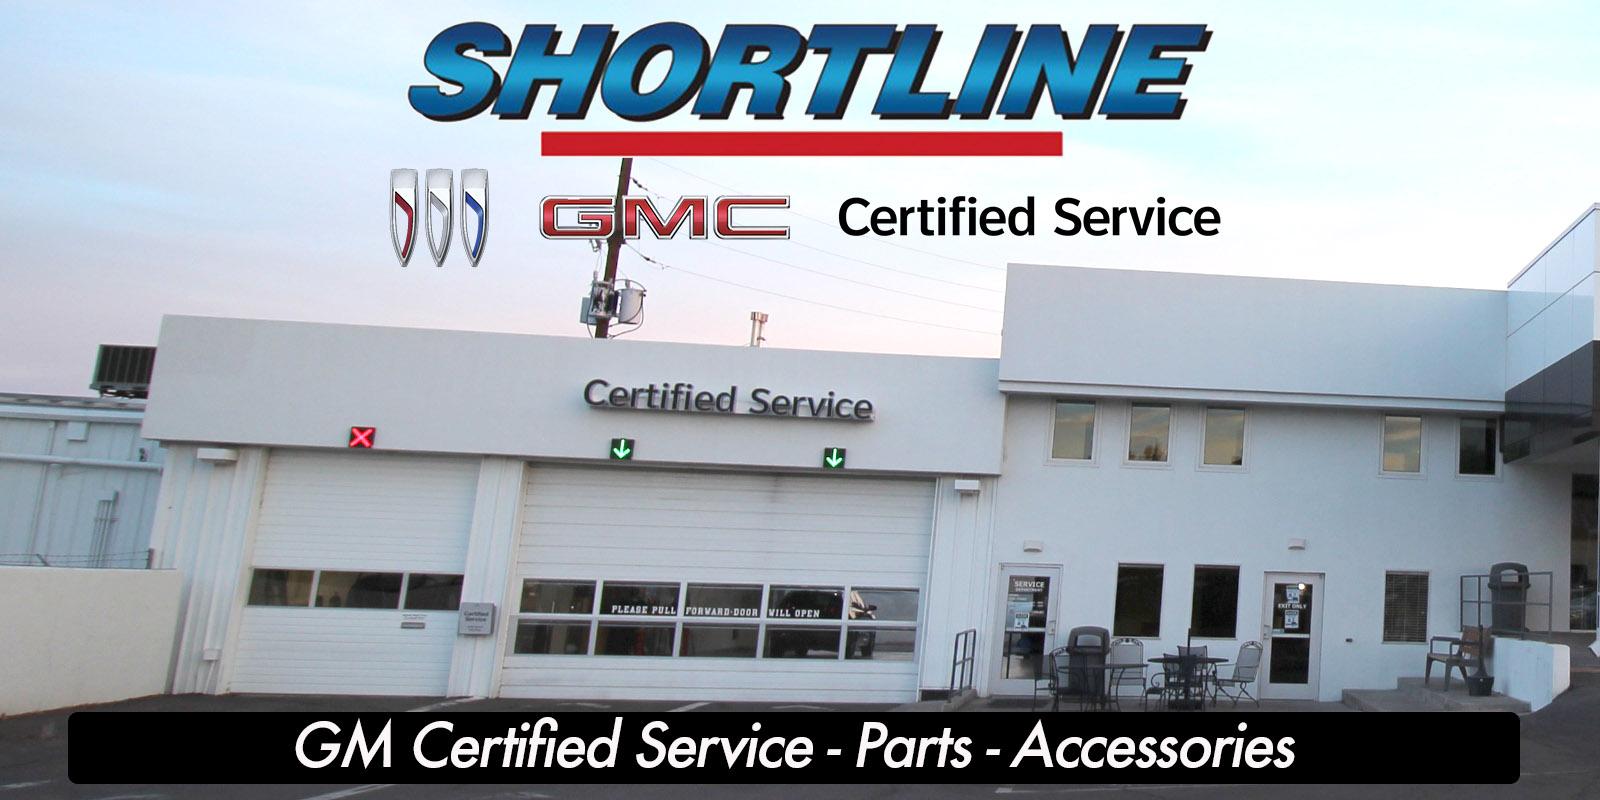 Get Certified Service at Shortline